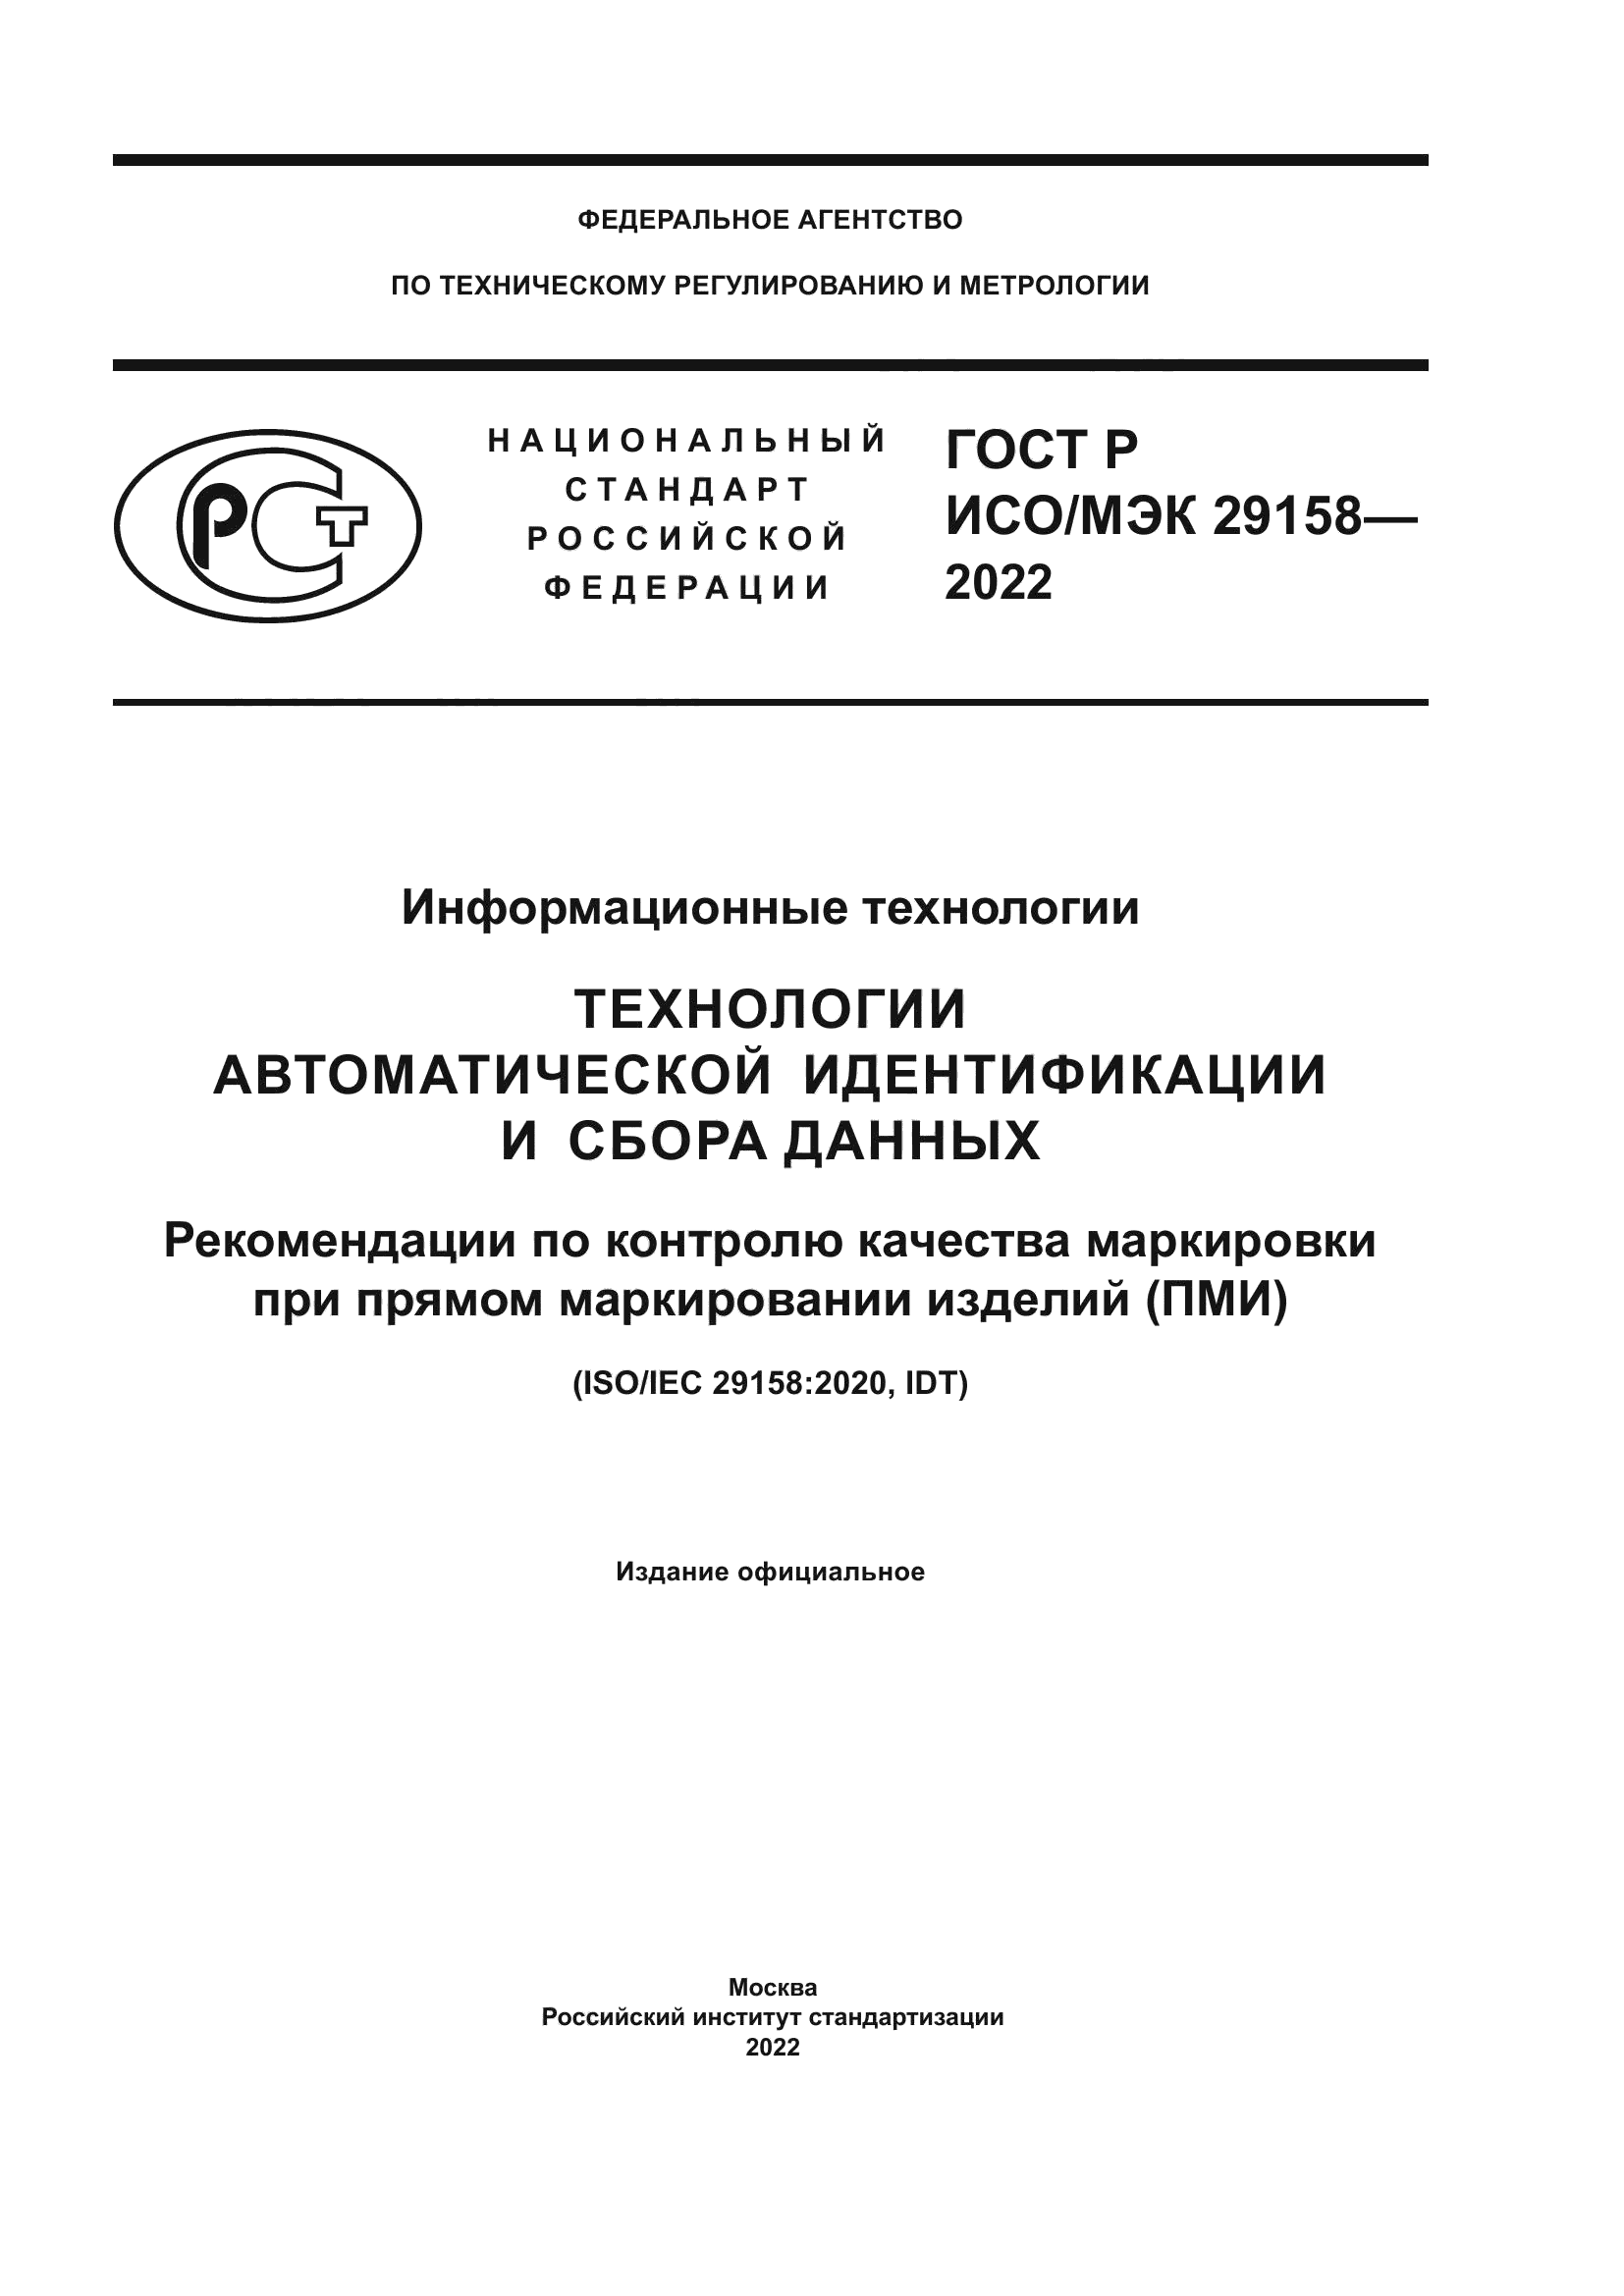 ГОСТ Р ИСО/МЭК 29158-2022